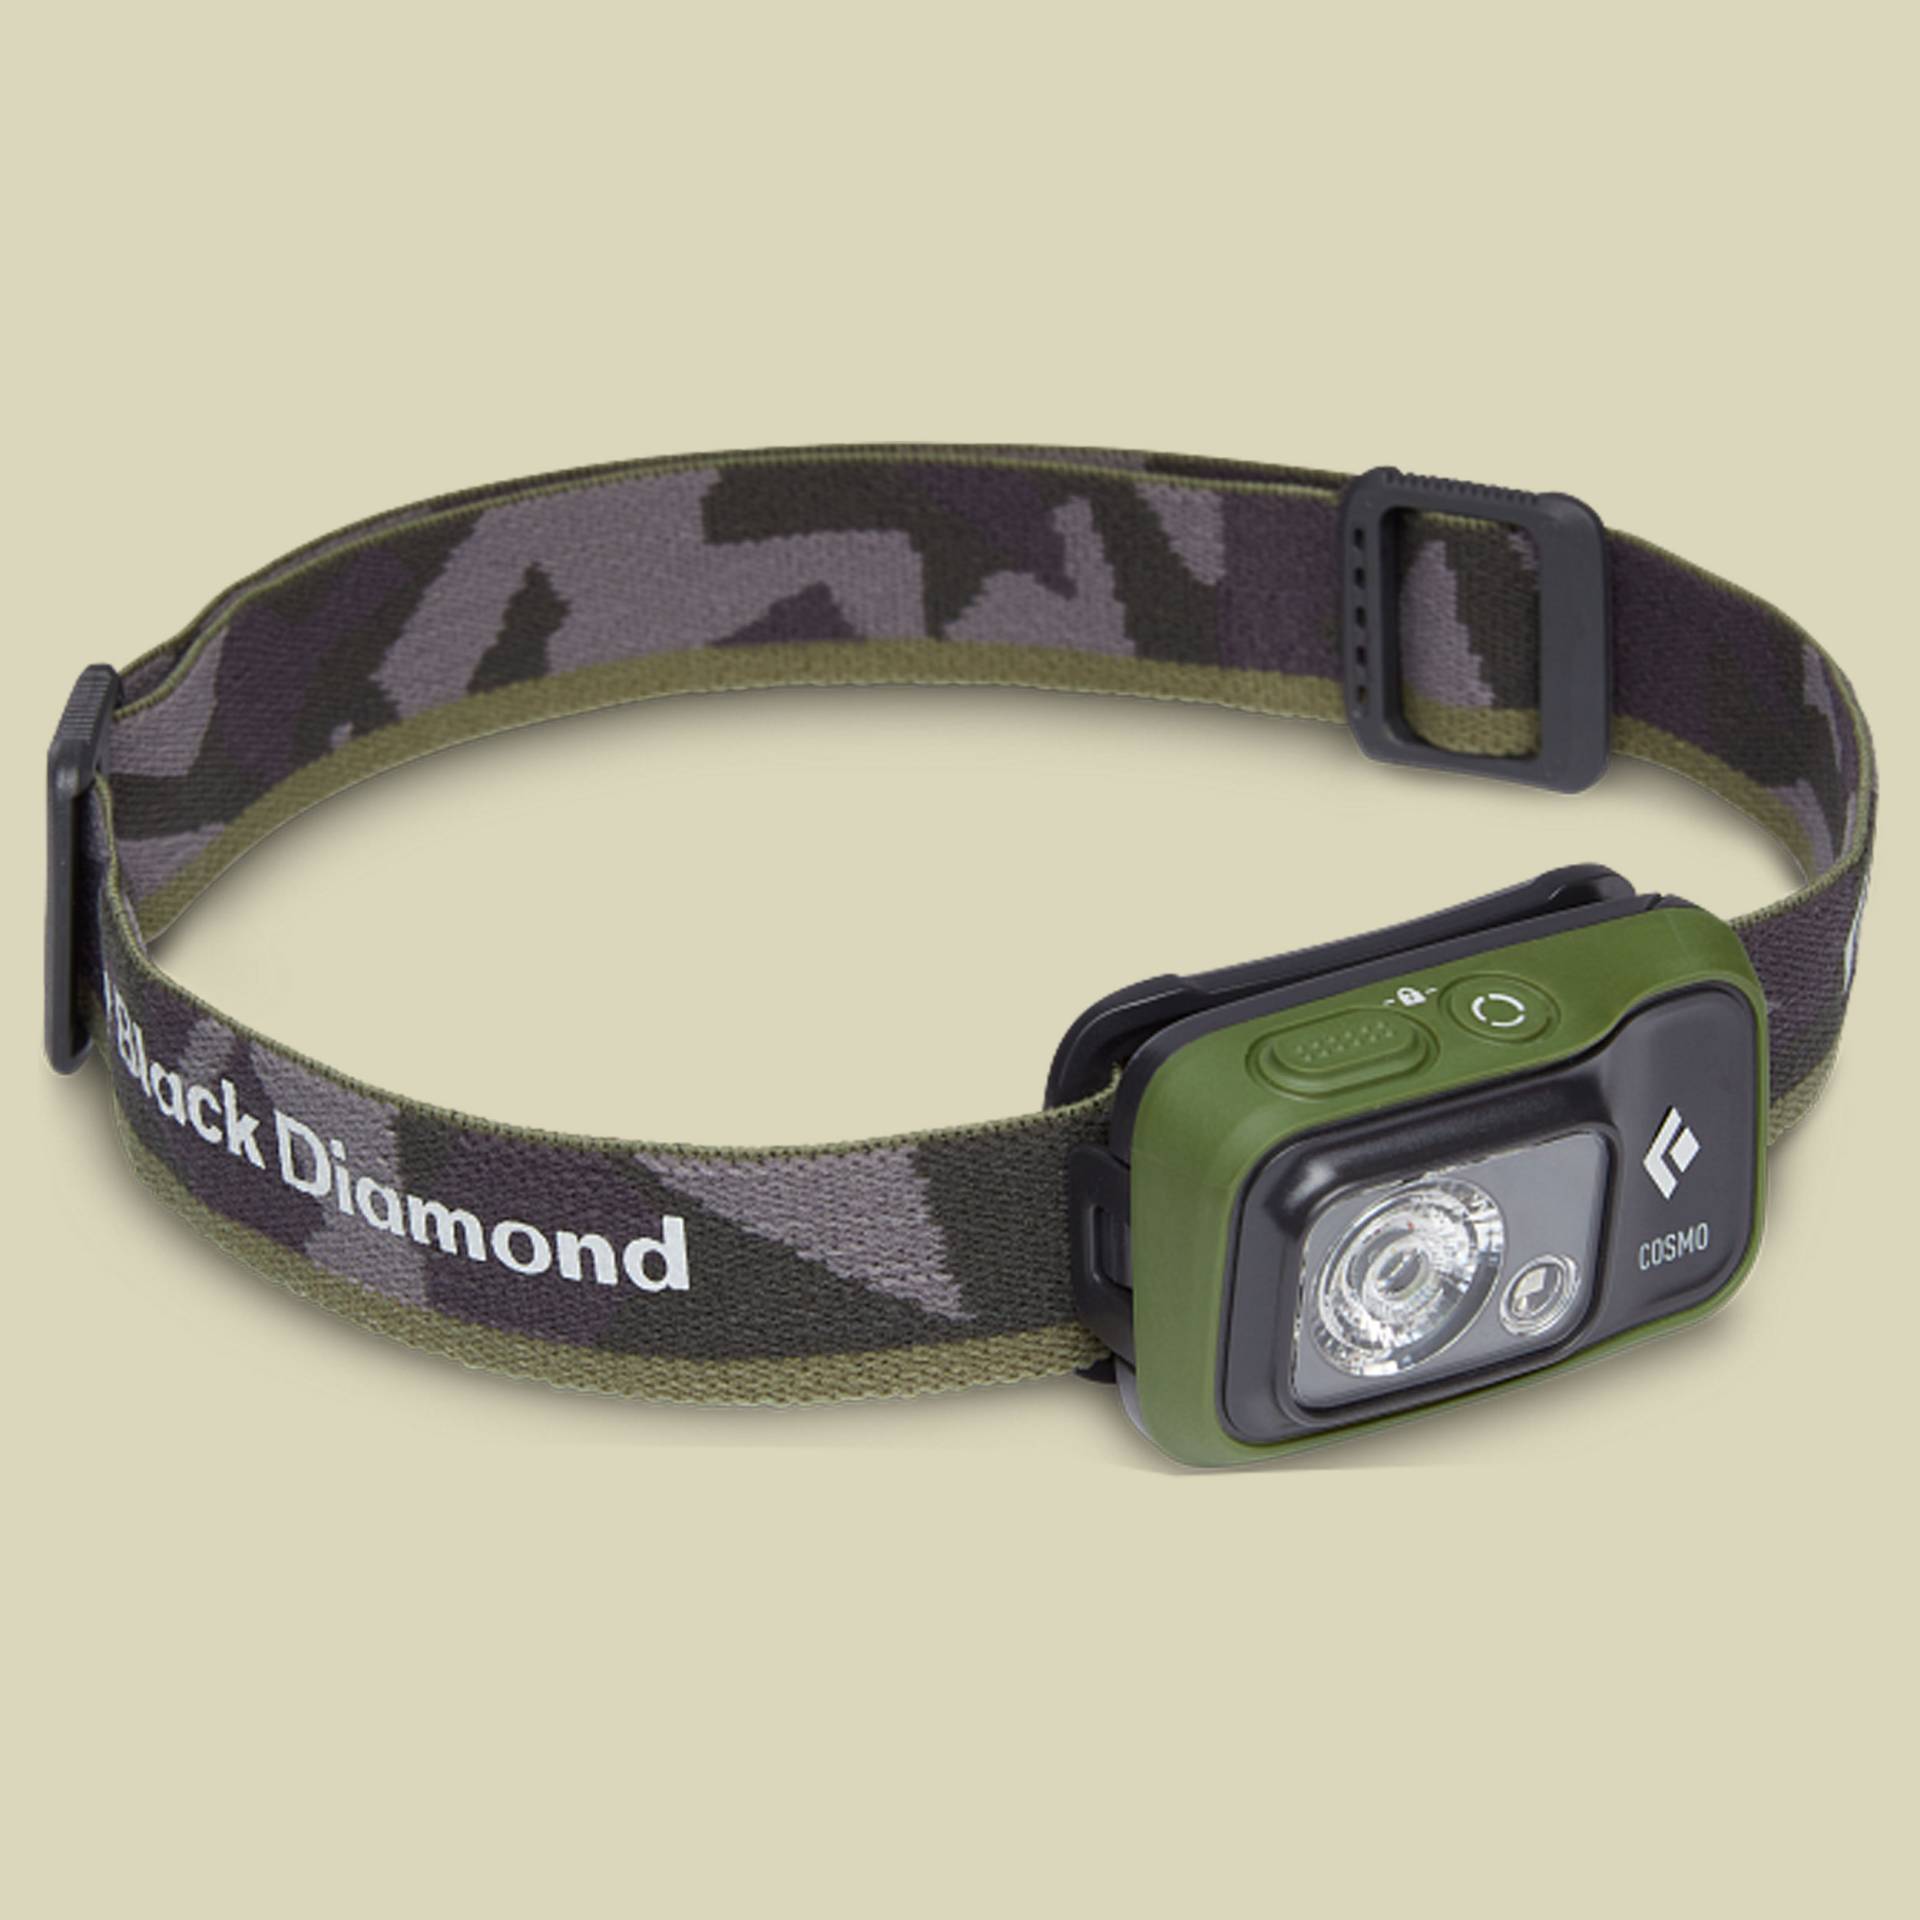 Cosmo 350 Headlamp grün one size - dark olive von Black Diamond